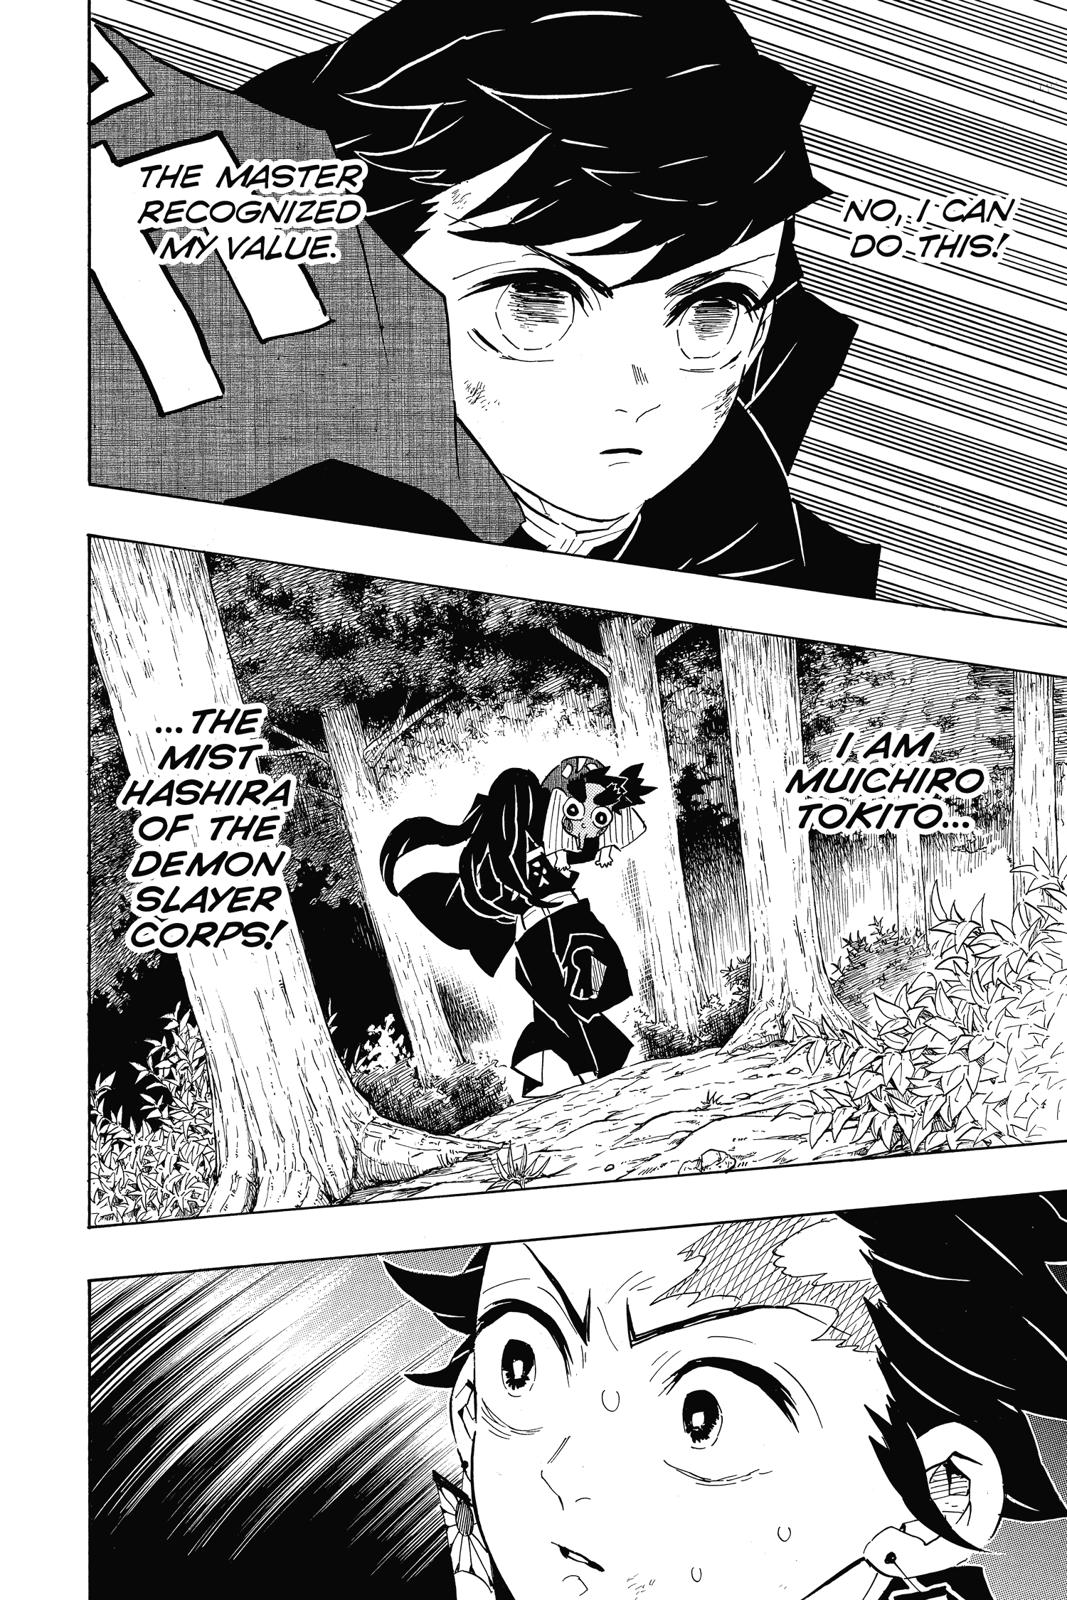 Demon Slayer Manga Manga Chapter - 108 - image 4